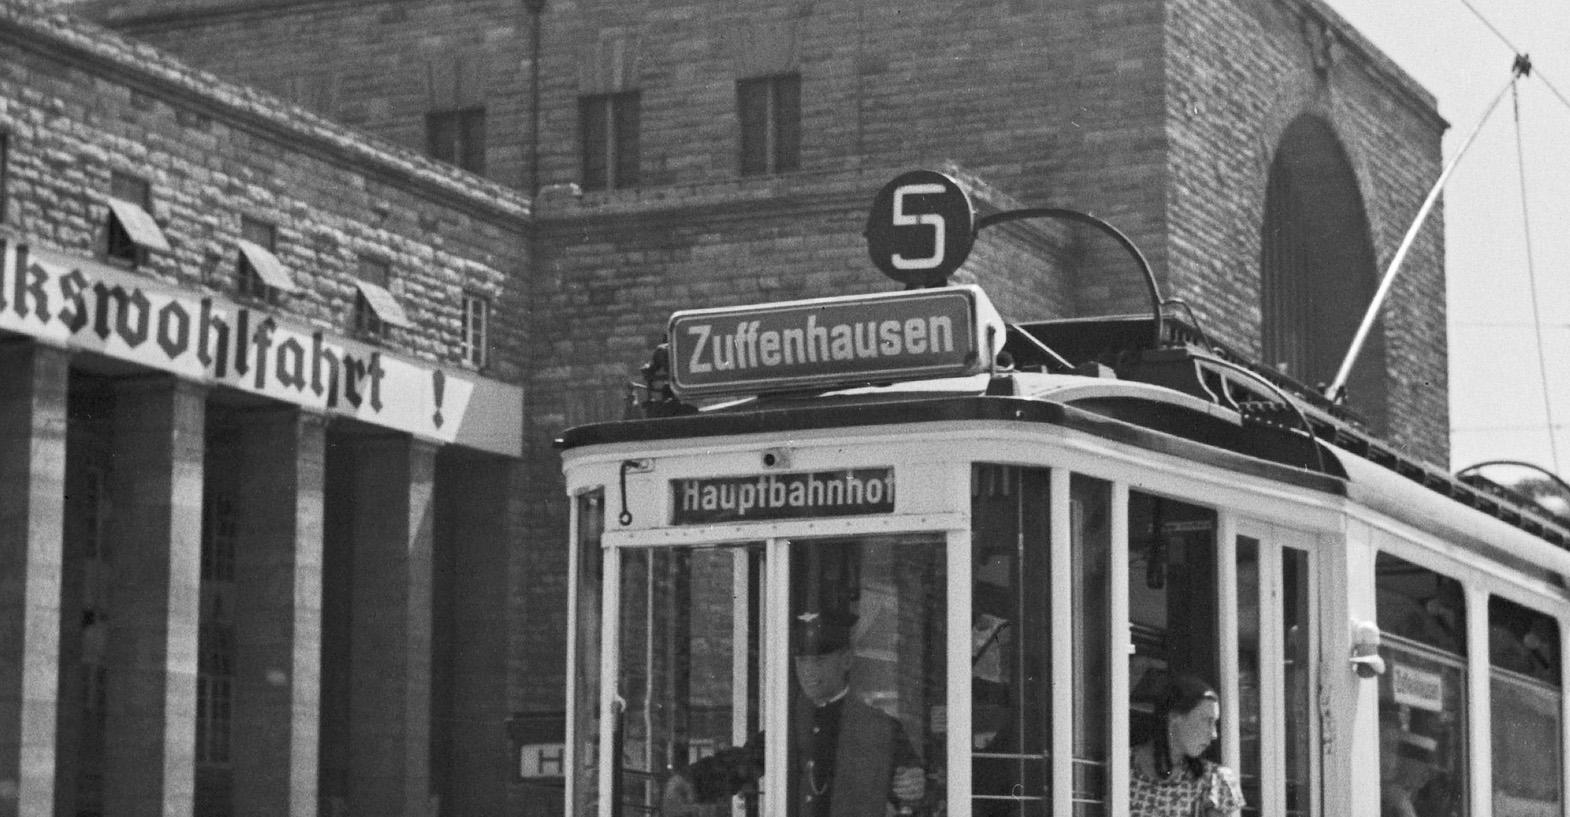 Tramlinie Nr. 5 Zuffenhausen Hauptstation, Stuttgart, Deutschland 1935, später gedruckt – Photograph von Karl Heinrich Lämmel